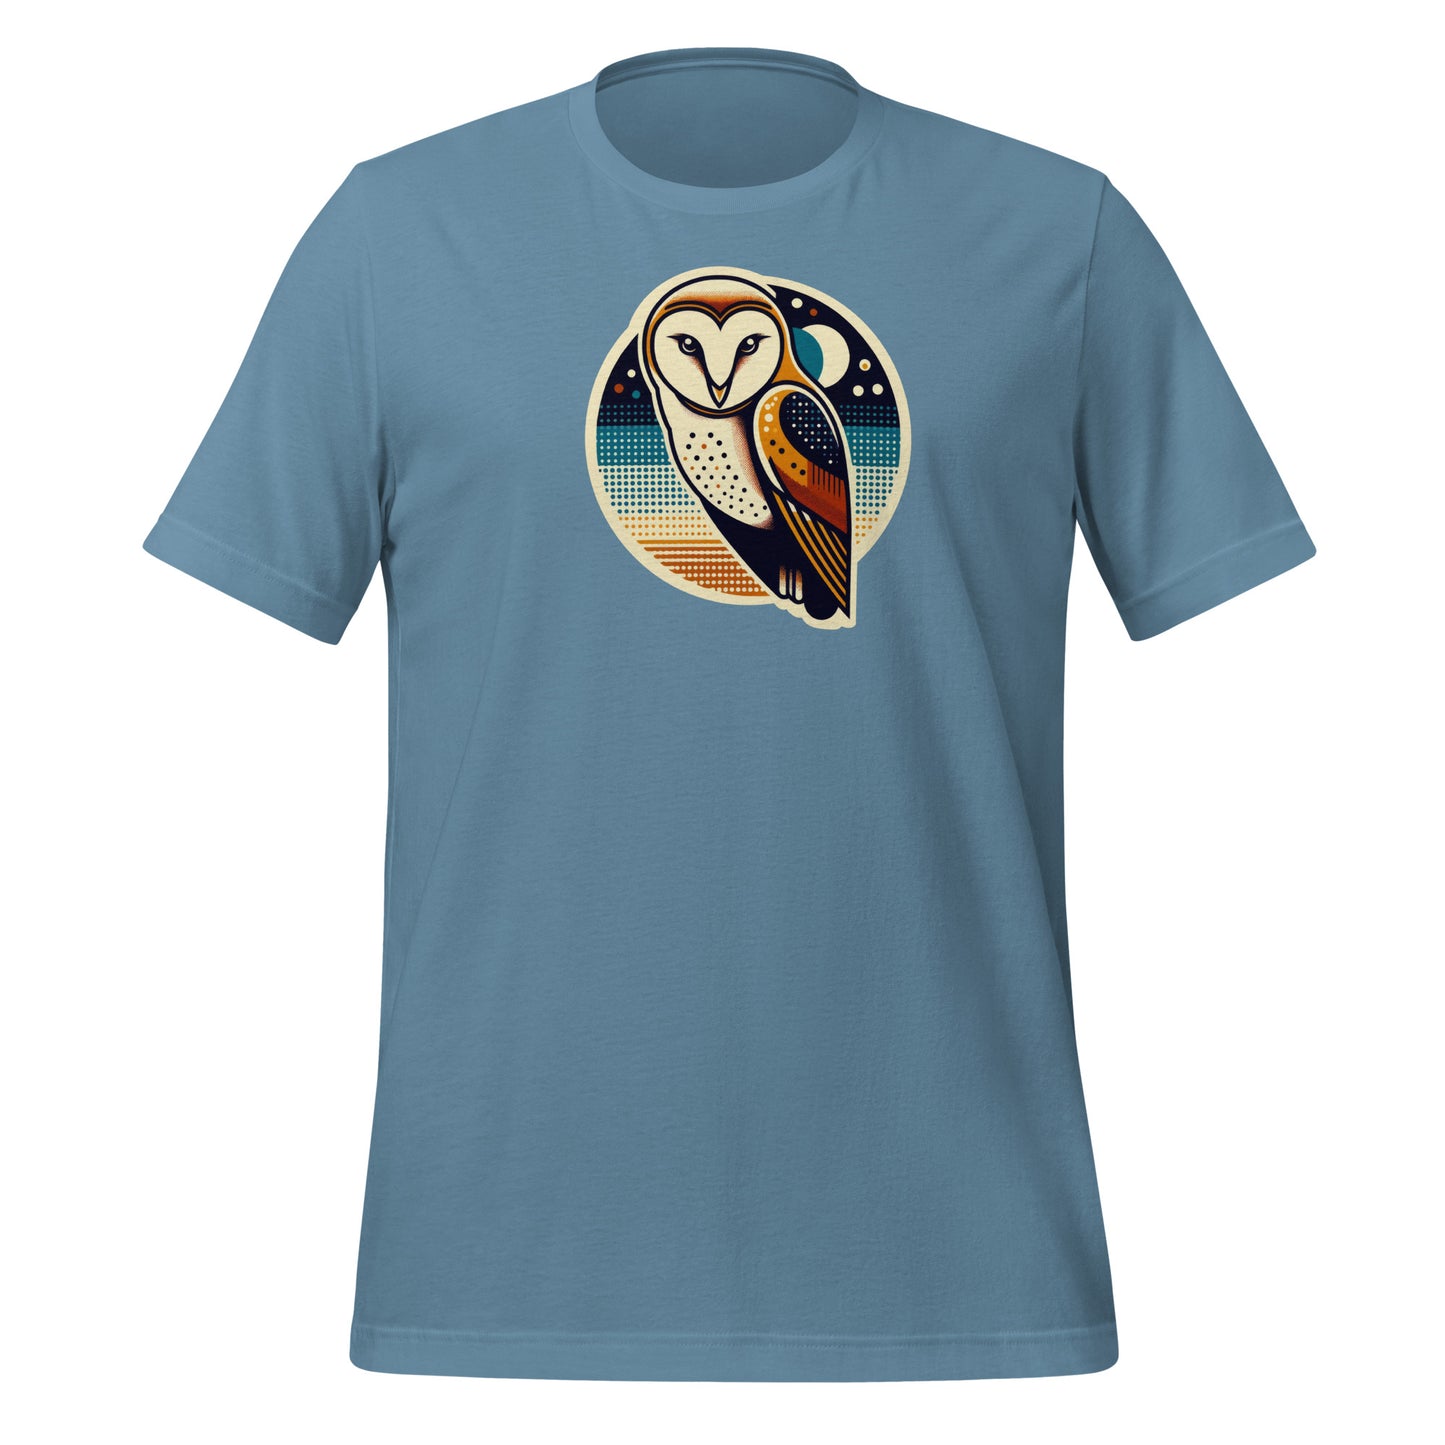 Barn Owl Lightweight Cotton Unisex T-Shirt